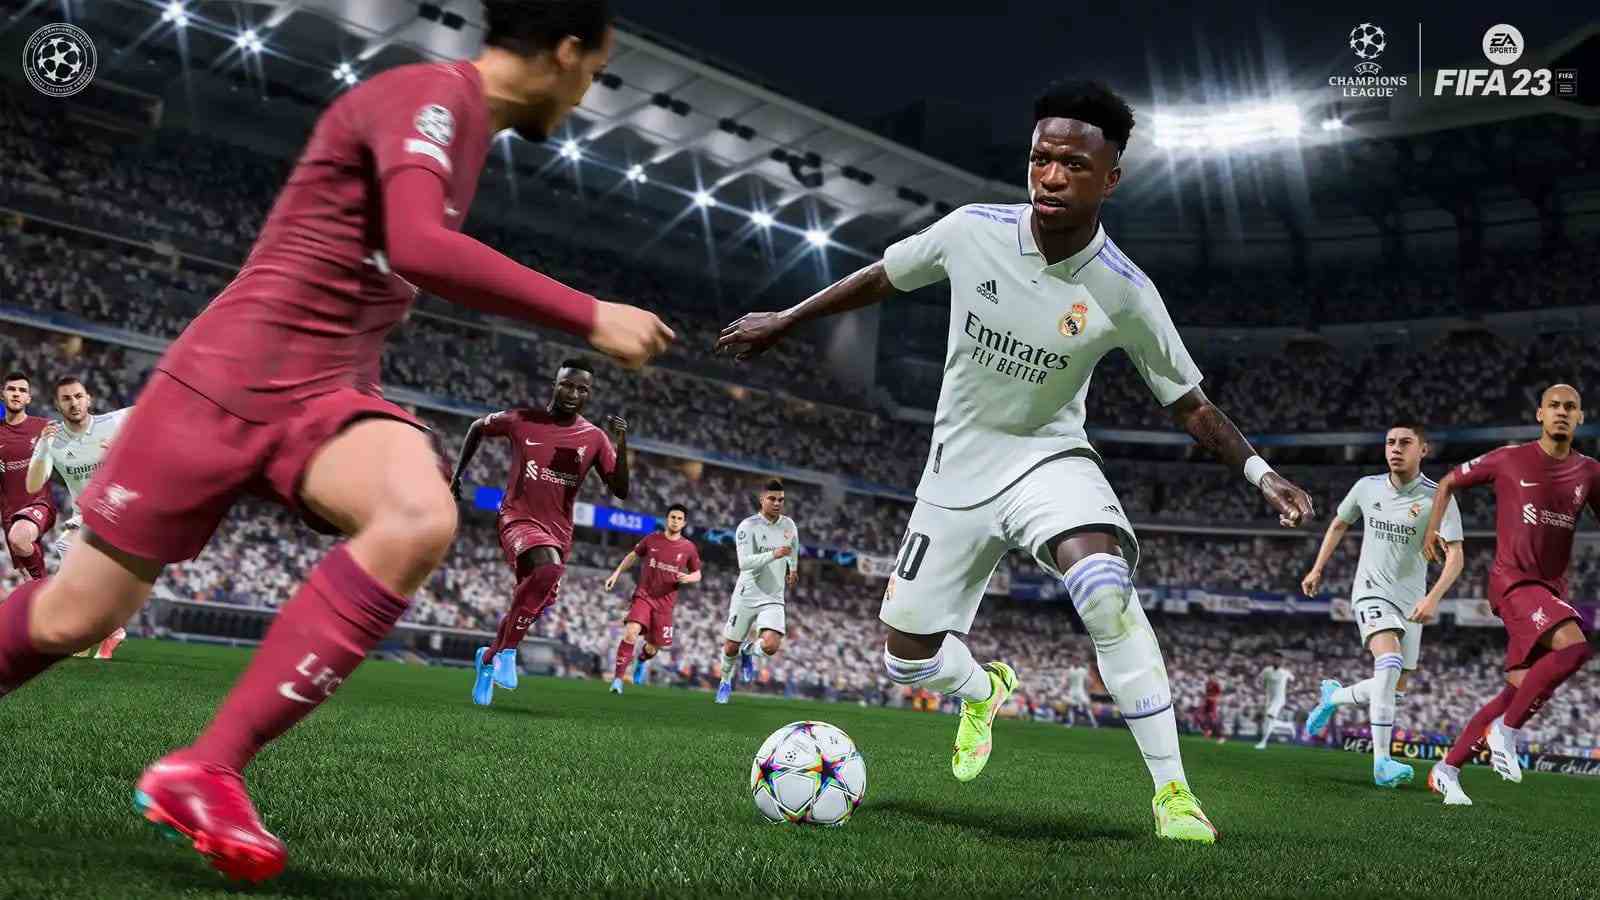 FIFA 23 Update 1.11